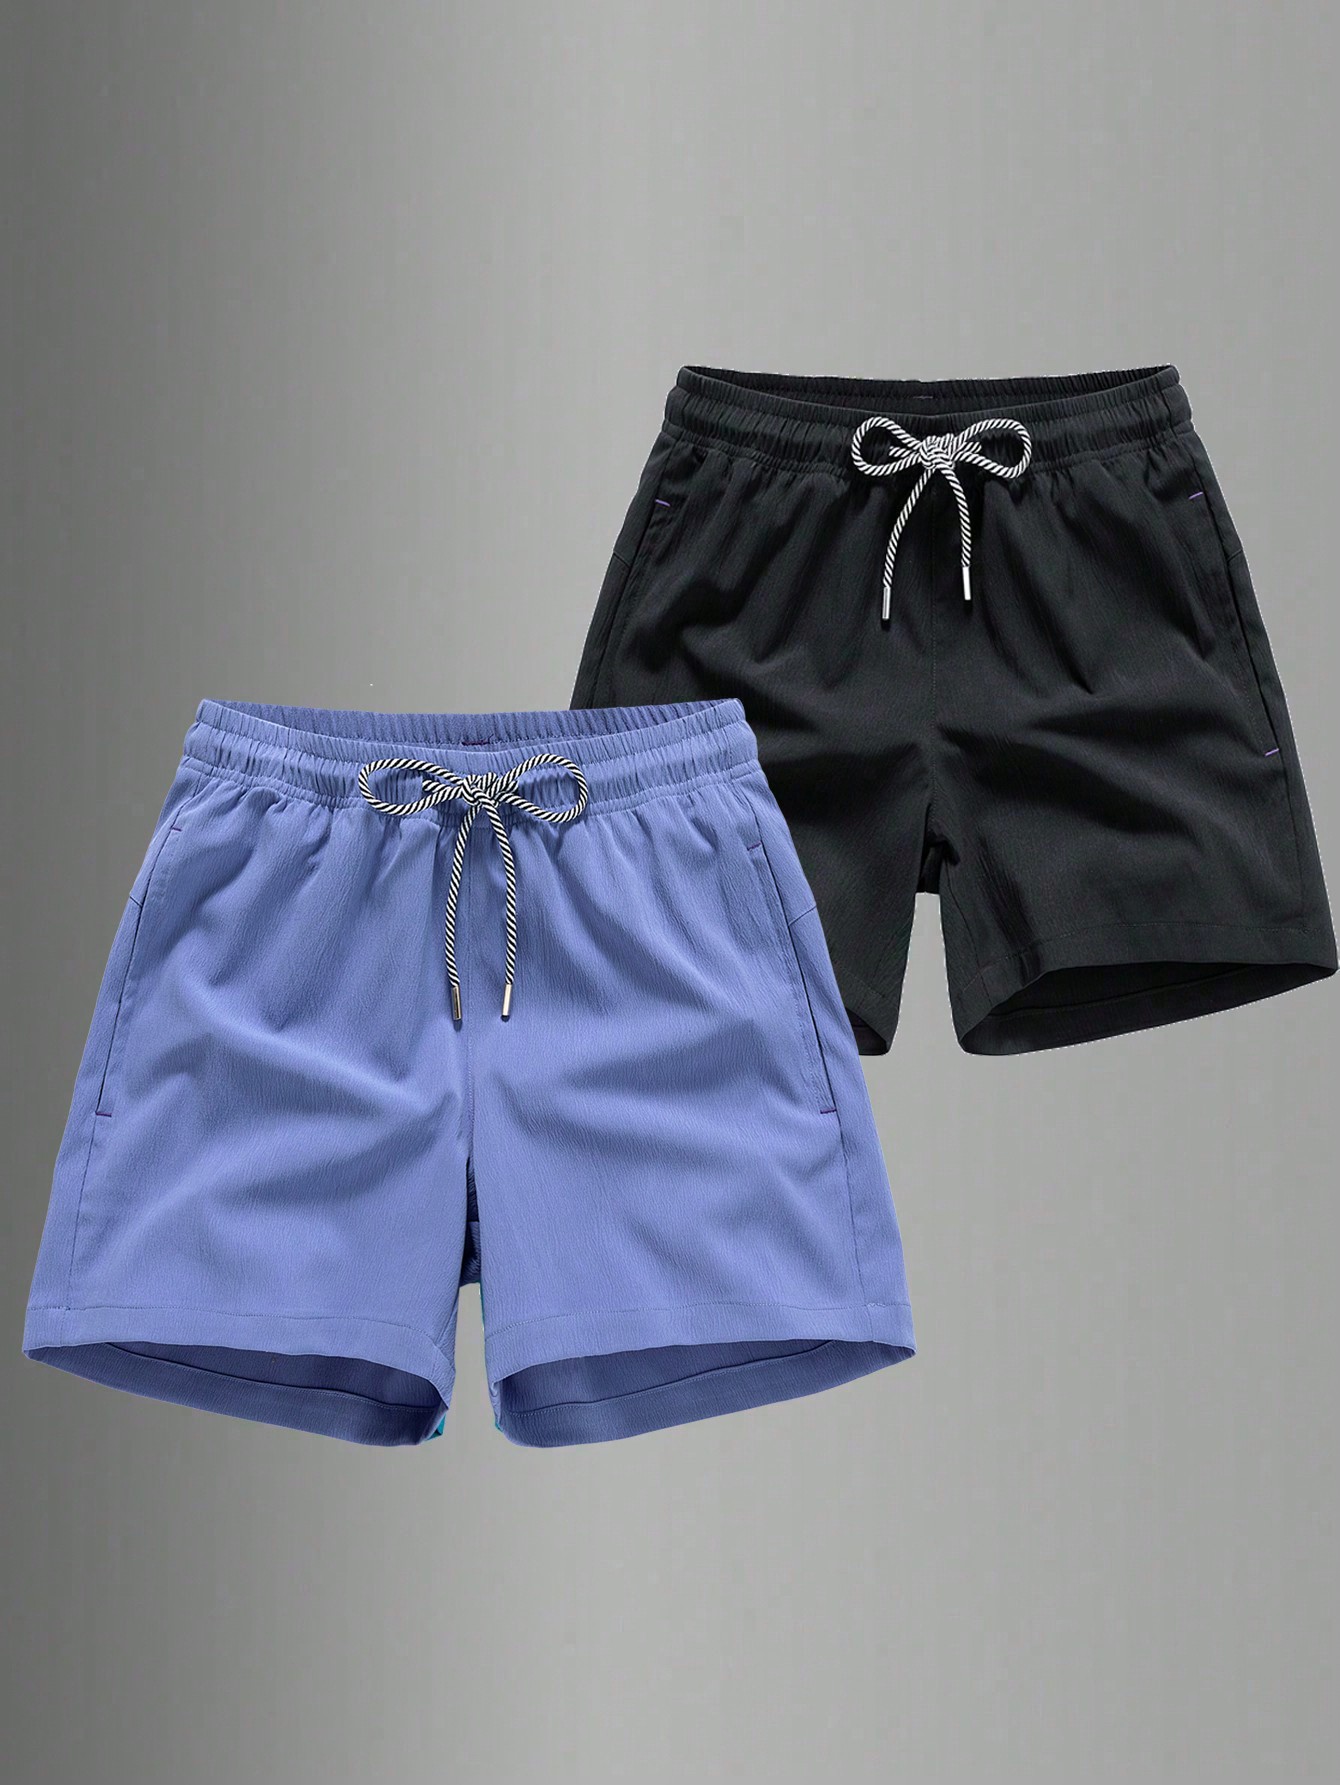 цена Мужские быстросохнущие спортивные шорты с завязками на талии для пляжного отдыха или тренировок, фиолетовый